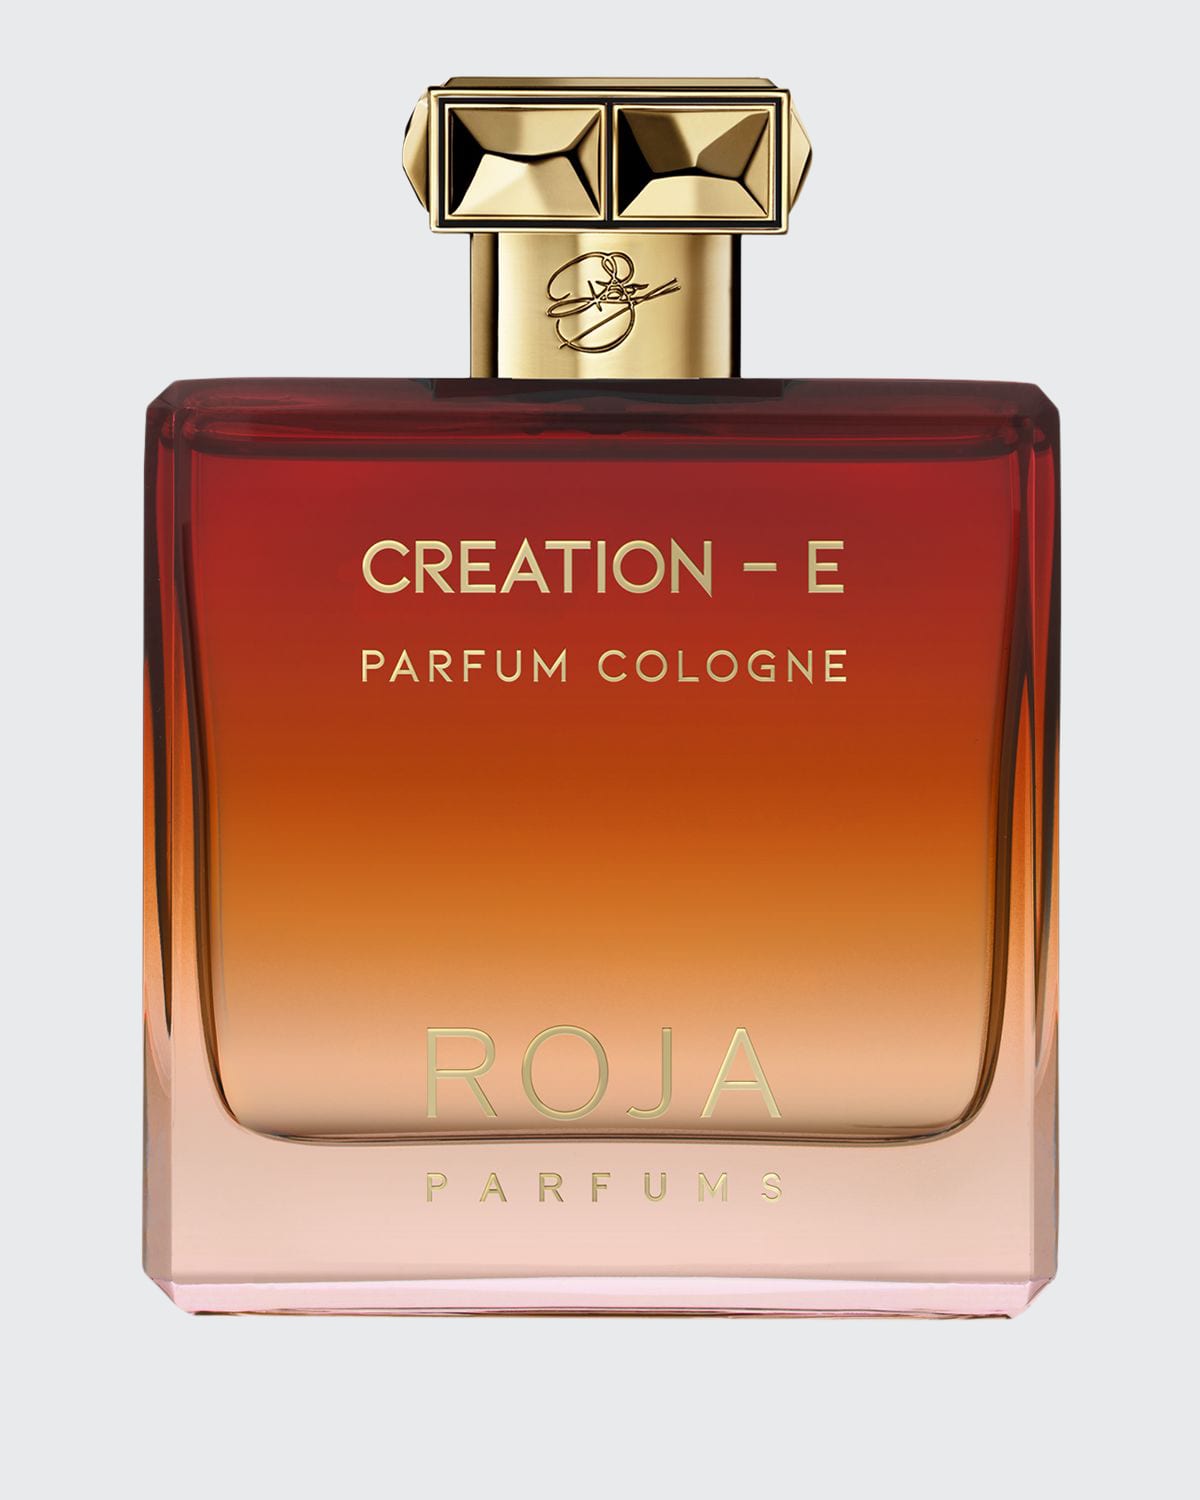 Creation-E Pour Homme Parfum Cologne, 3.3 oz.